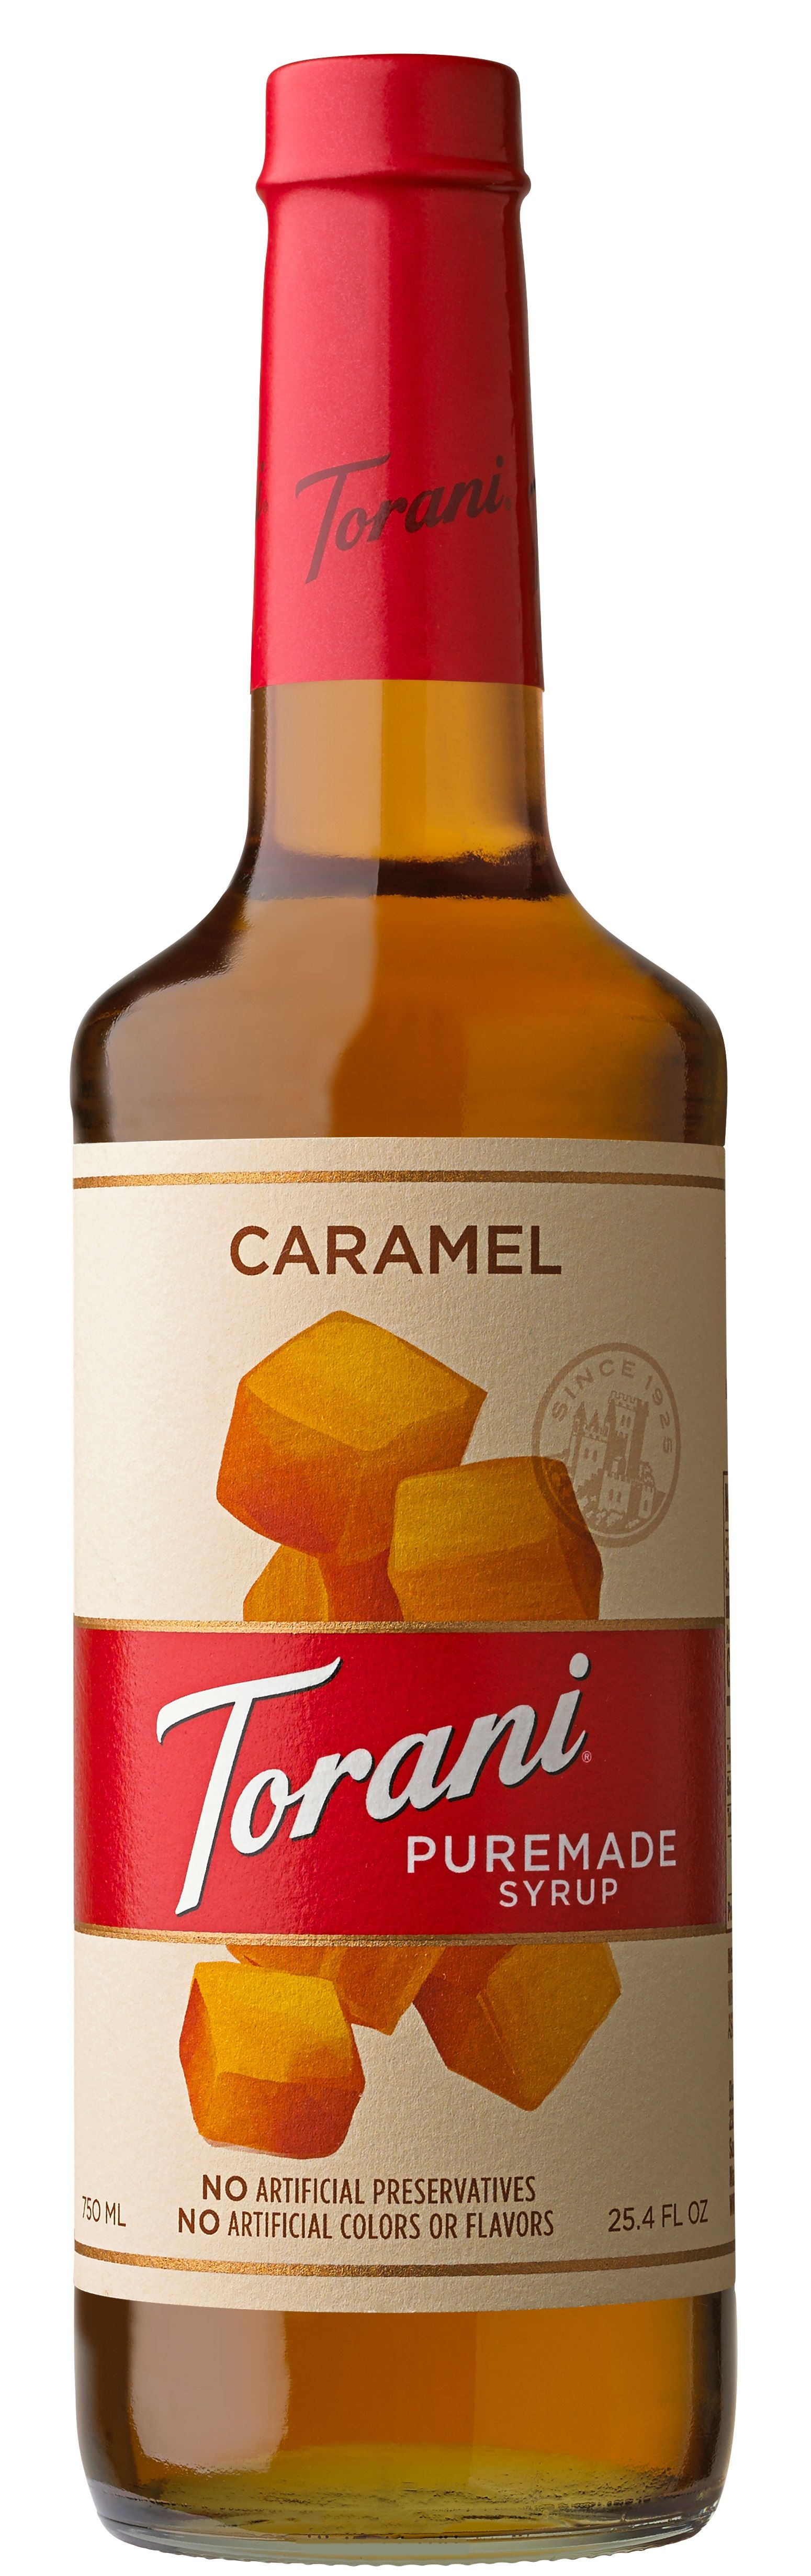 Torani - Puremade Syrup Caramel